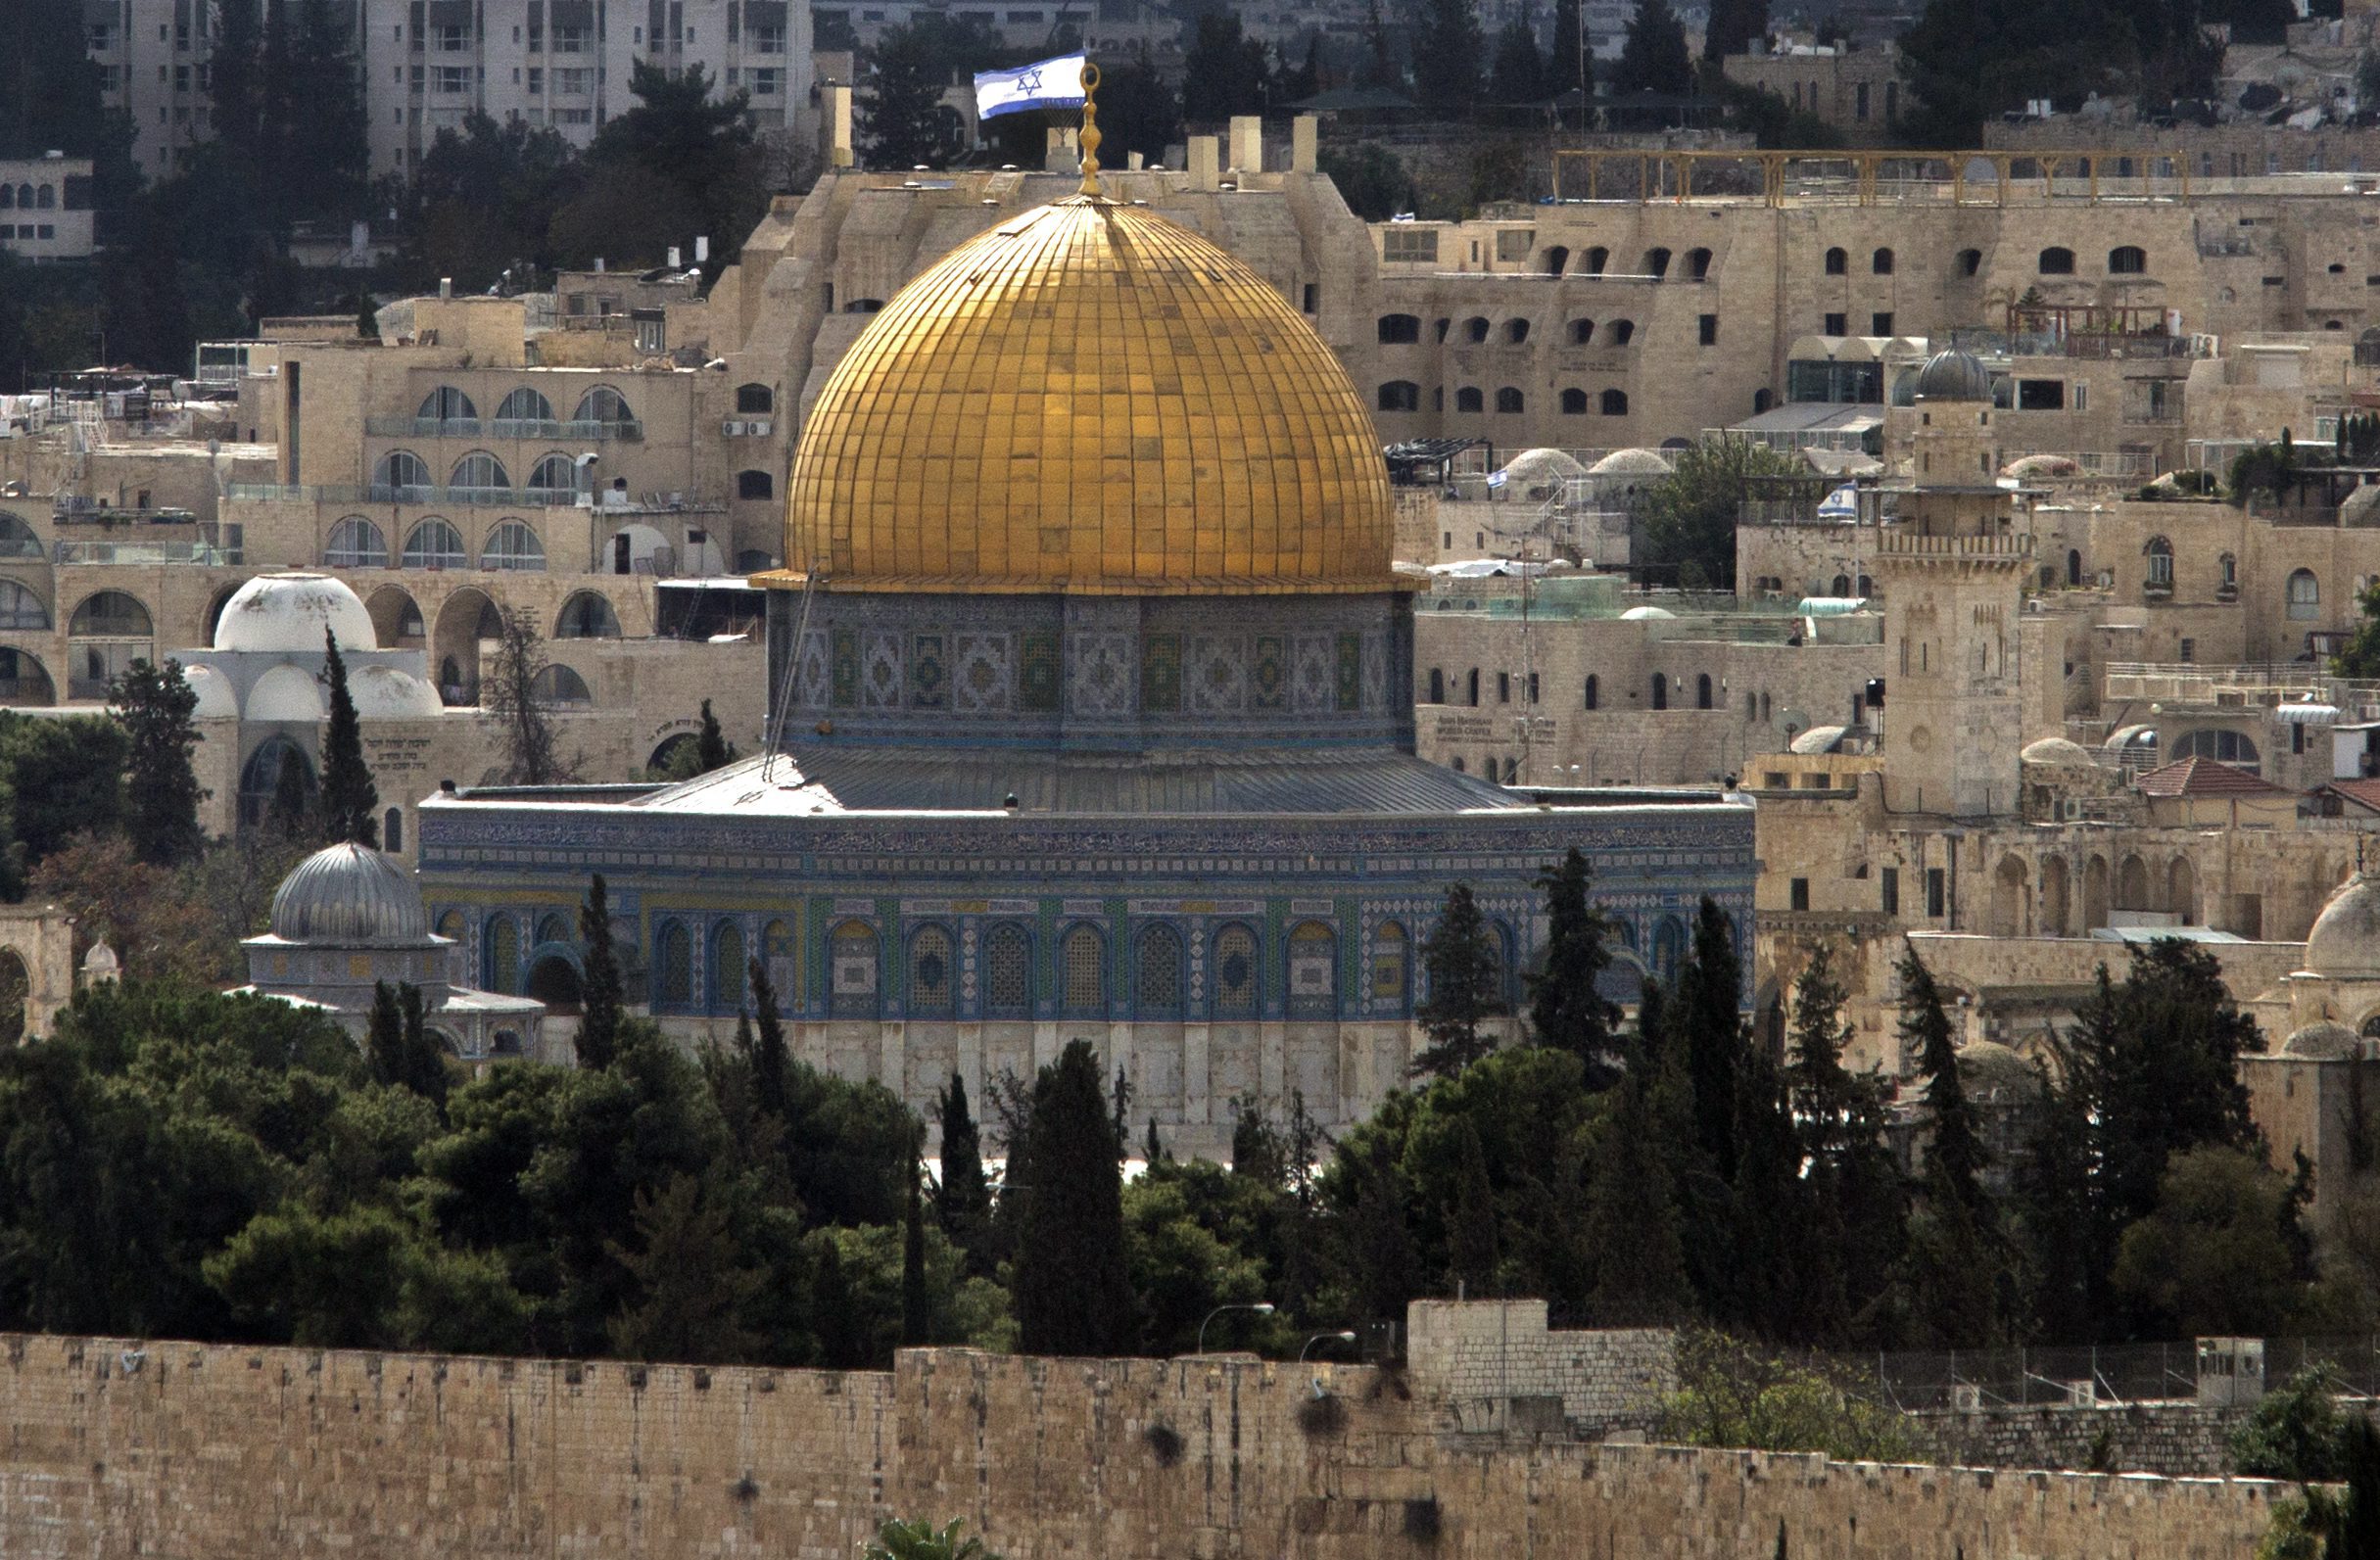 Παλαιστινιακό: Δεν επιμένει πλέον ο Λευκός Οίκος σε λύση δύο κρατών